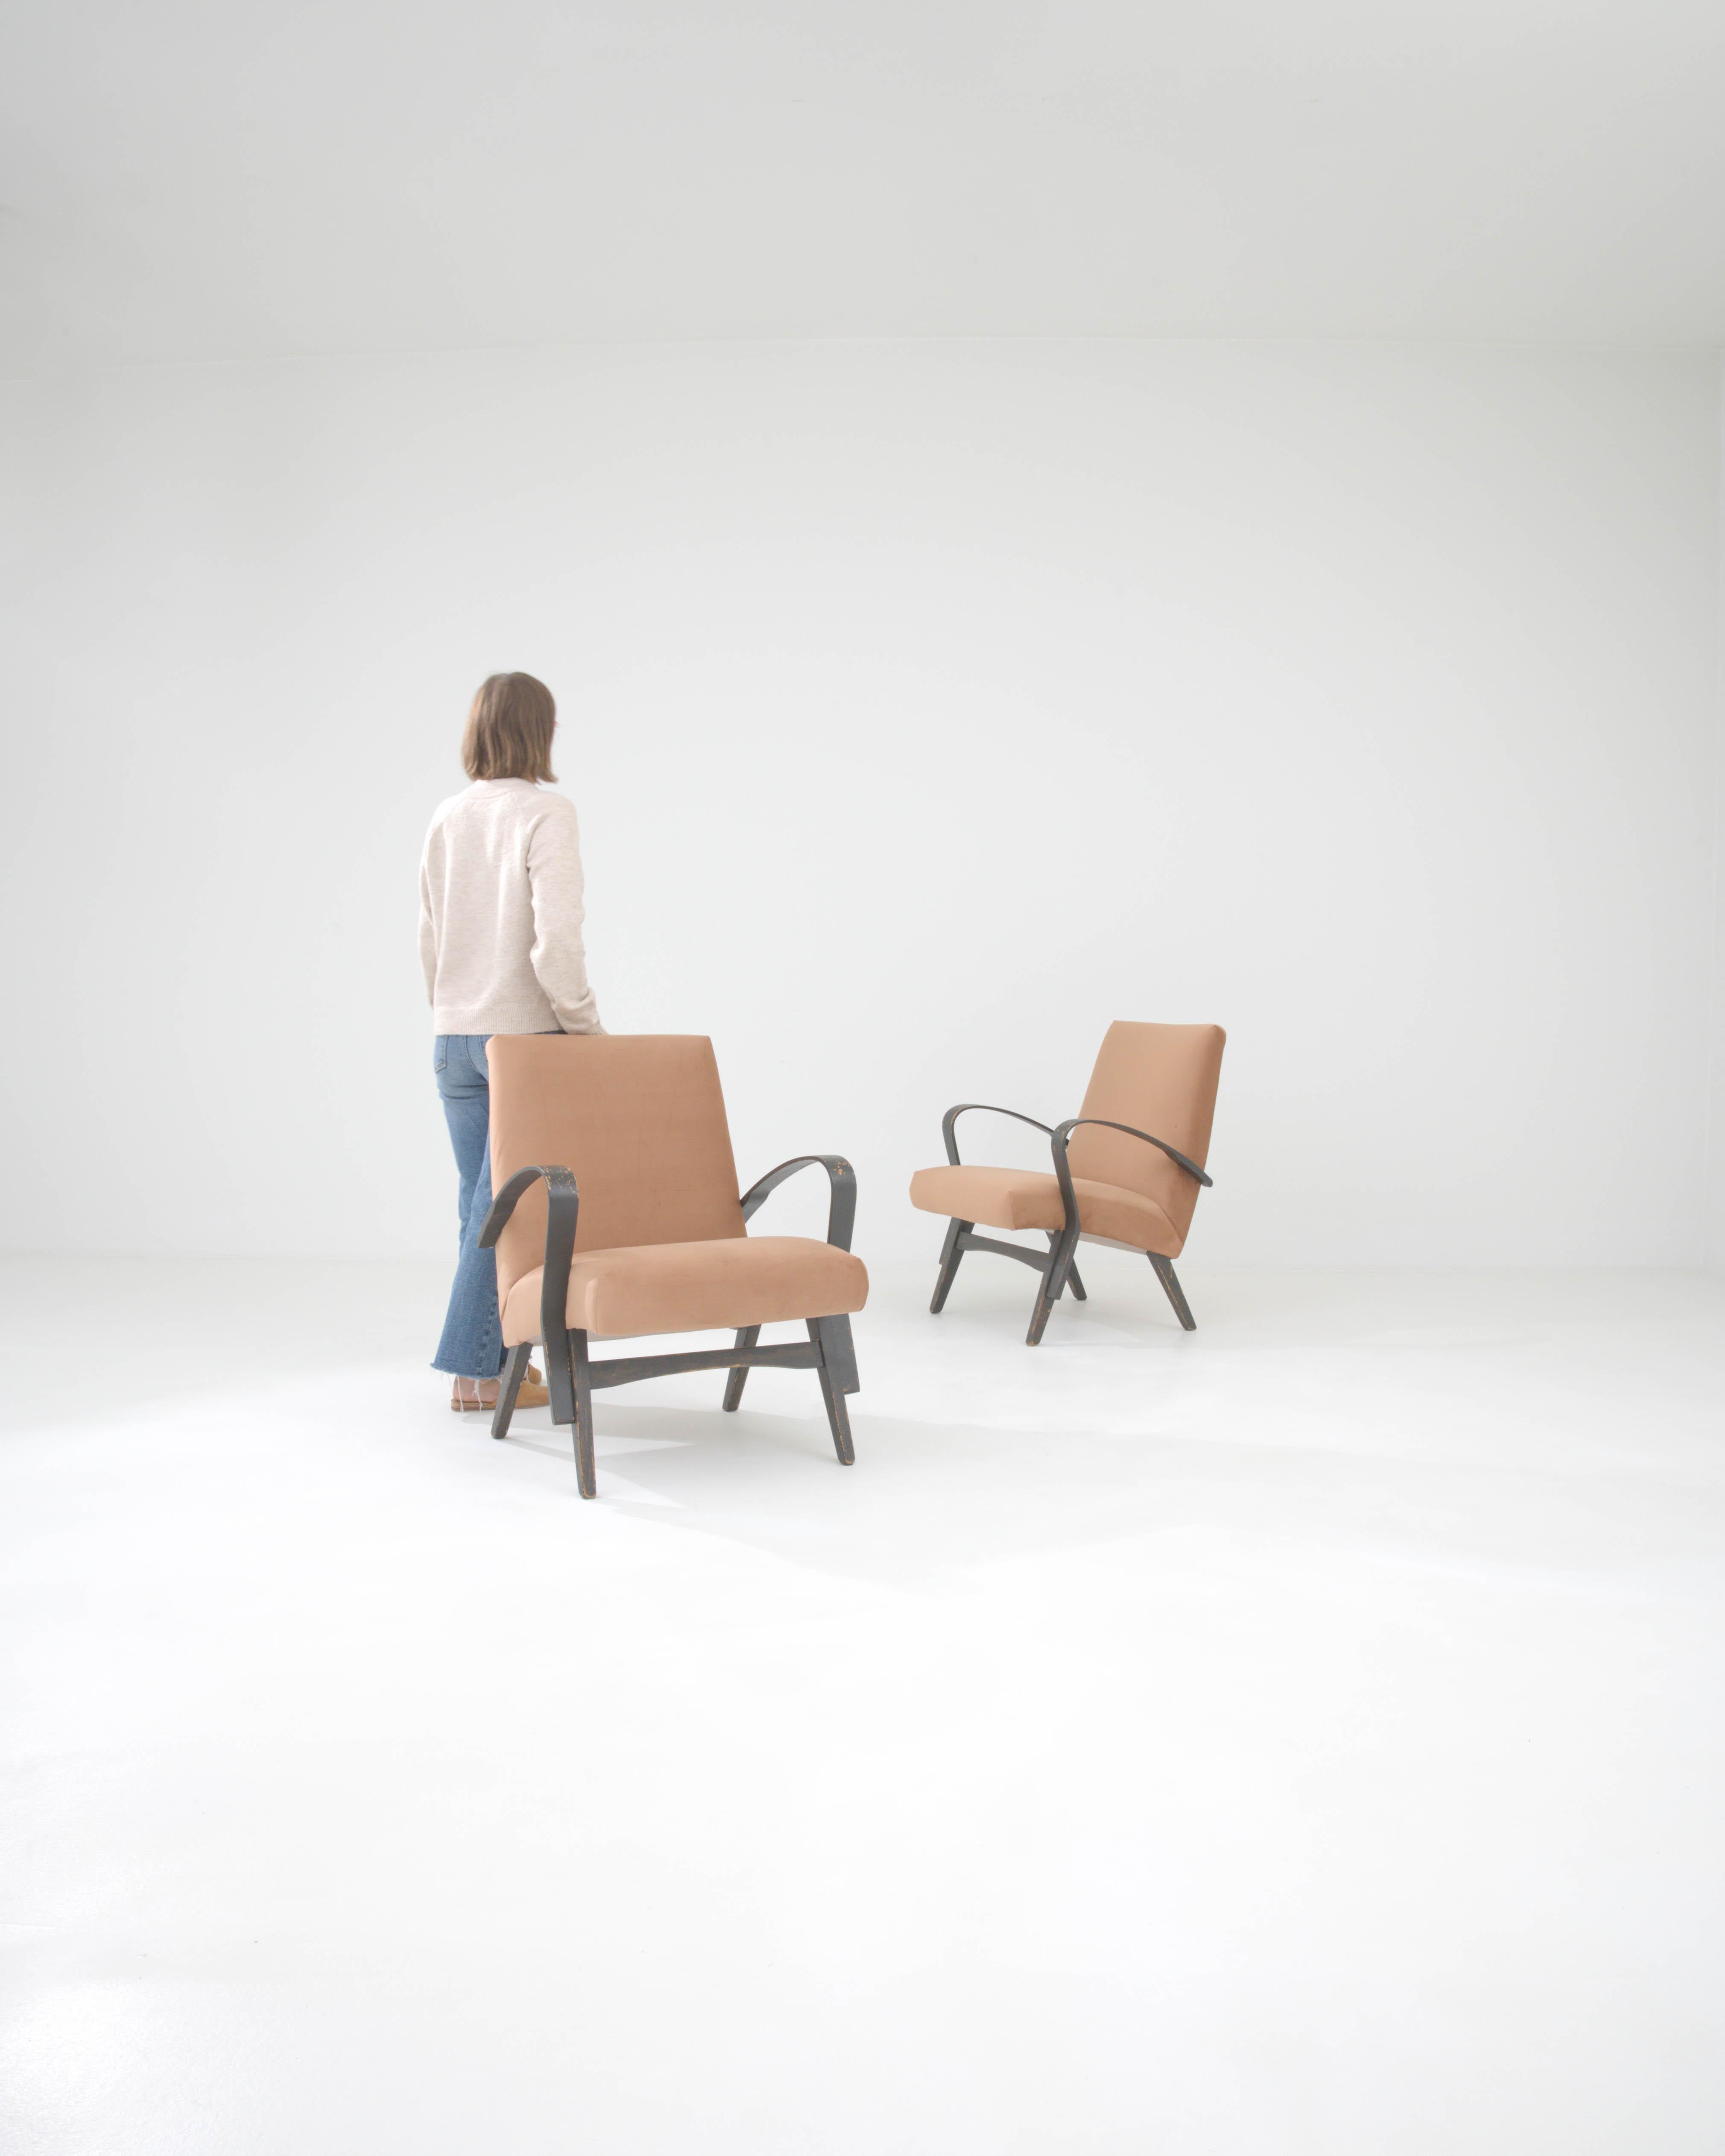 Ces fauteuils rembourrés tchèques des années 1960 par Tatra sont une célébration du modernisme vintage. Le couple dégage une ambiance à la fois élégante et invitante, ses lignes épurées et son design minimaliste constituant une déclaration subtile